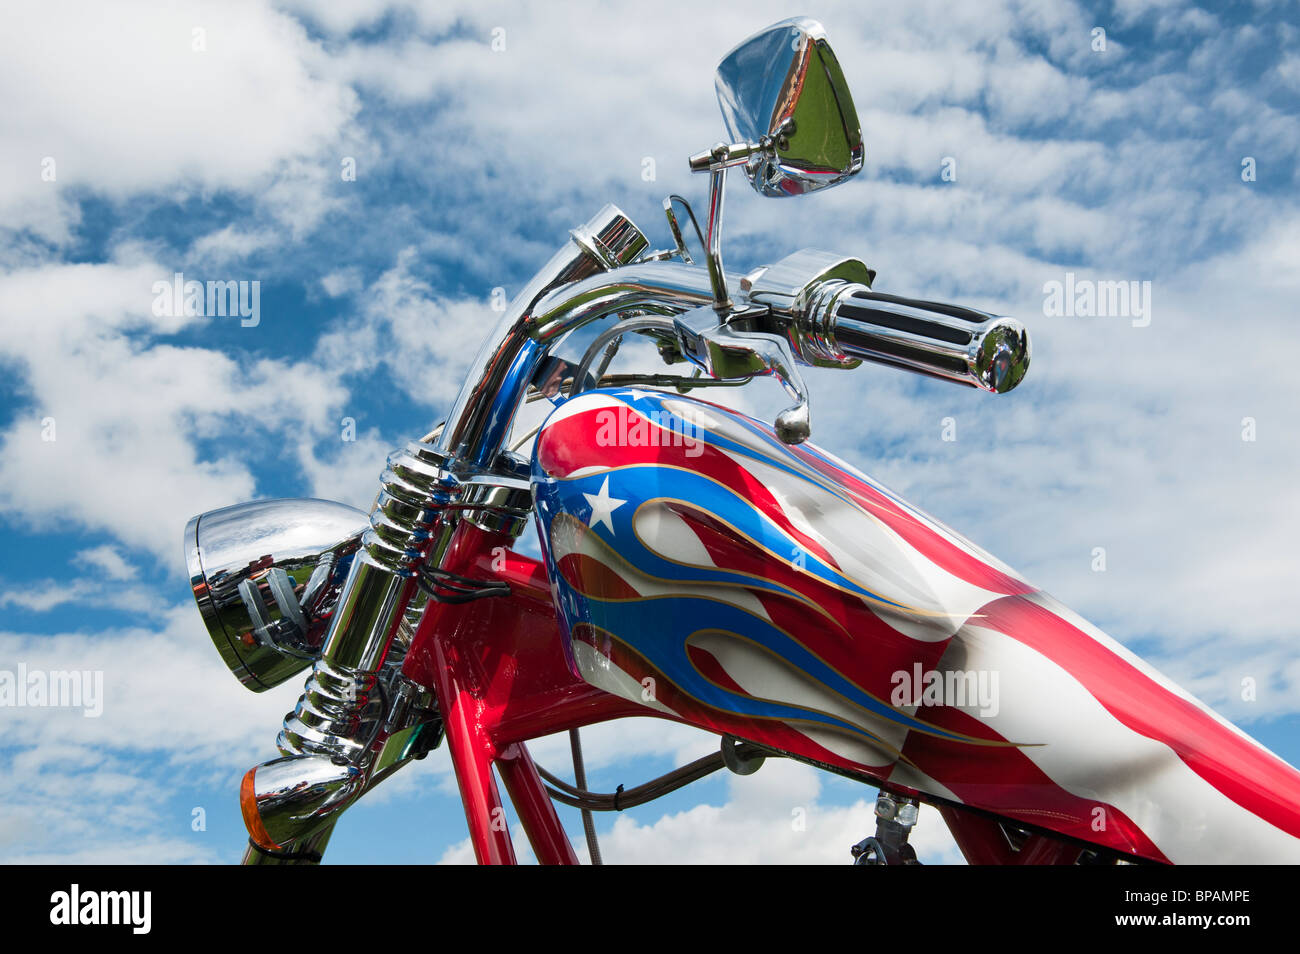 Moto Harley Davidson, avec des travaux de peinture personnalisée drapeau américain Banque D'Images